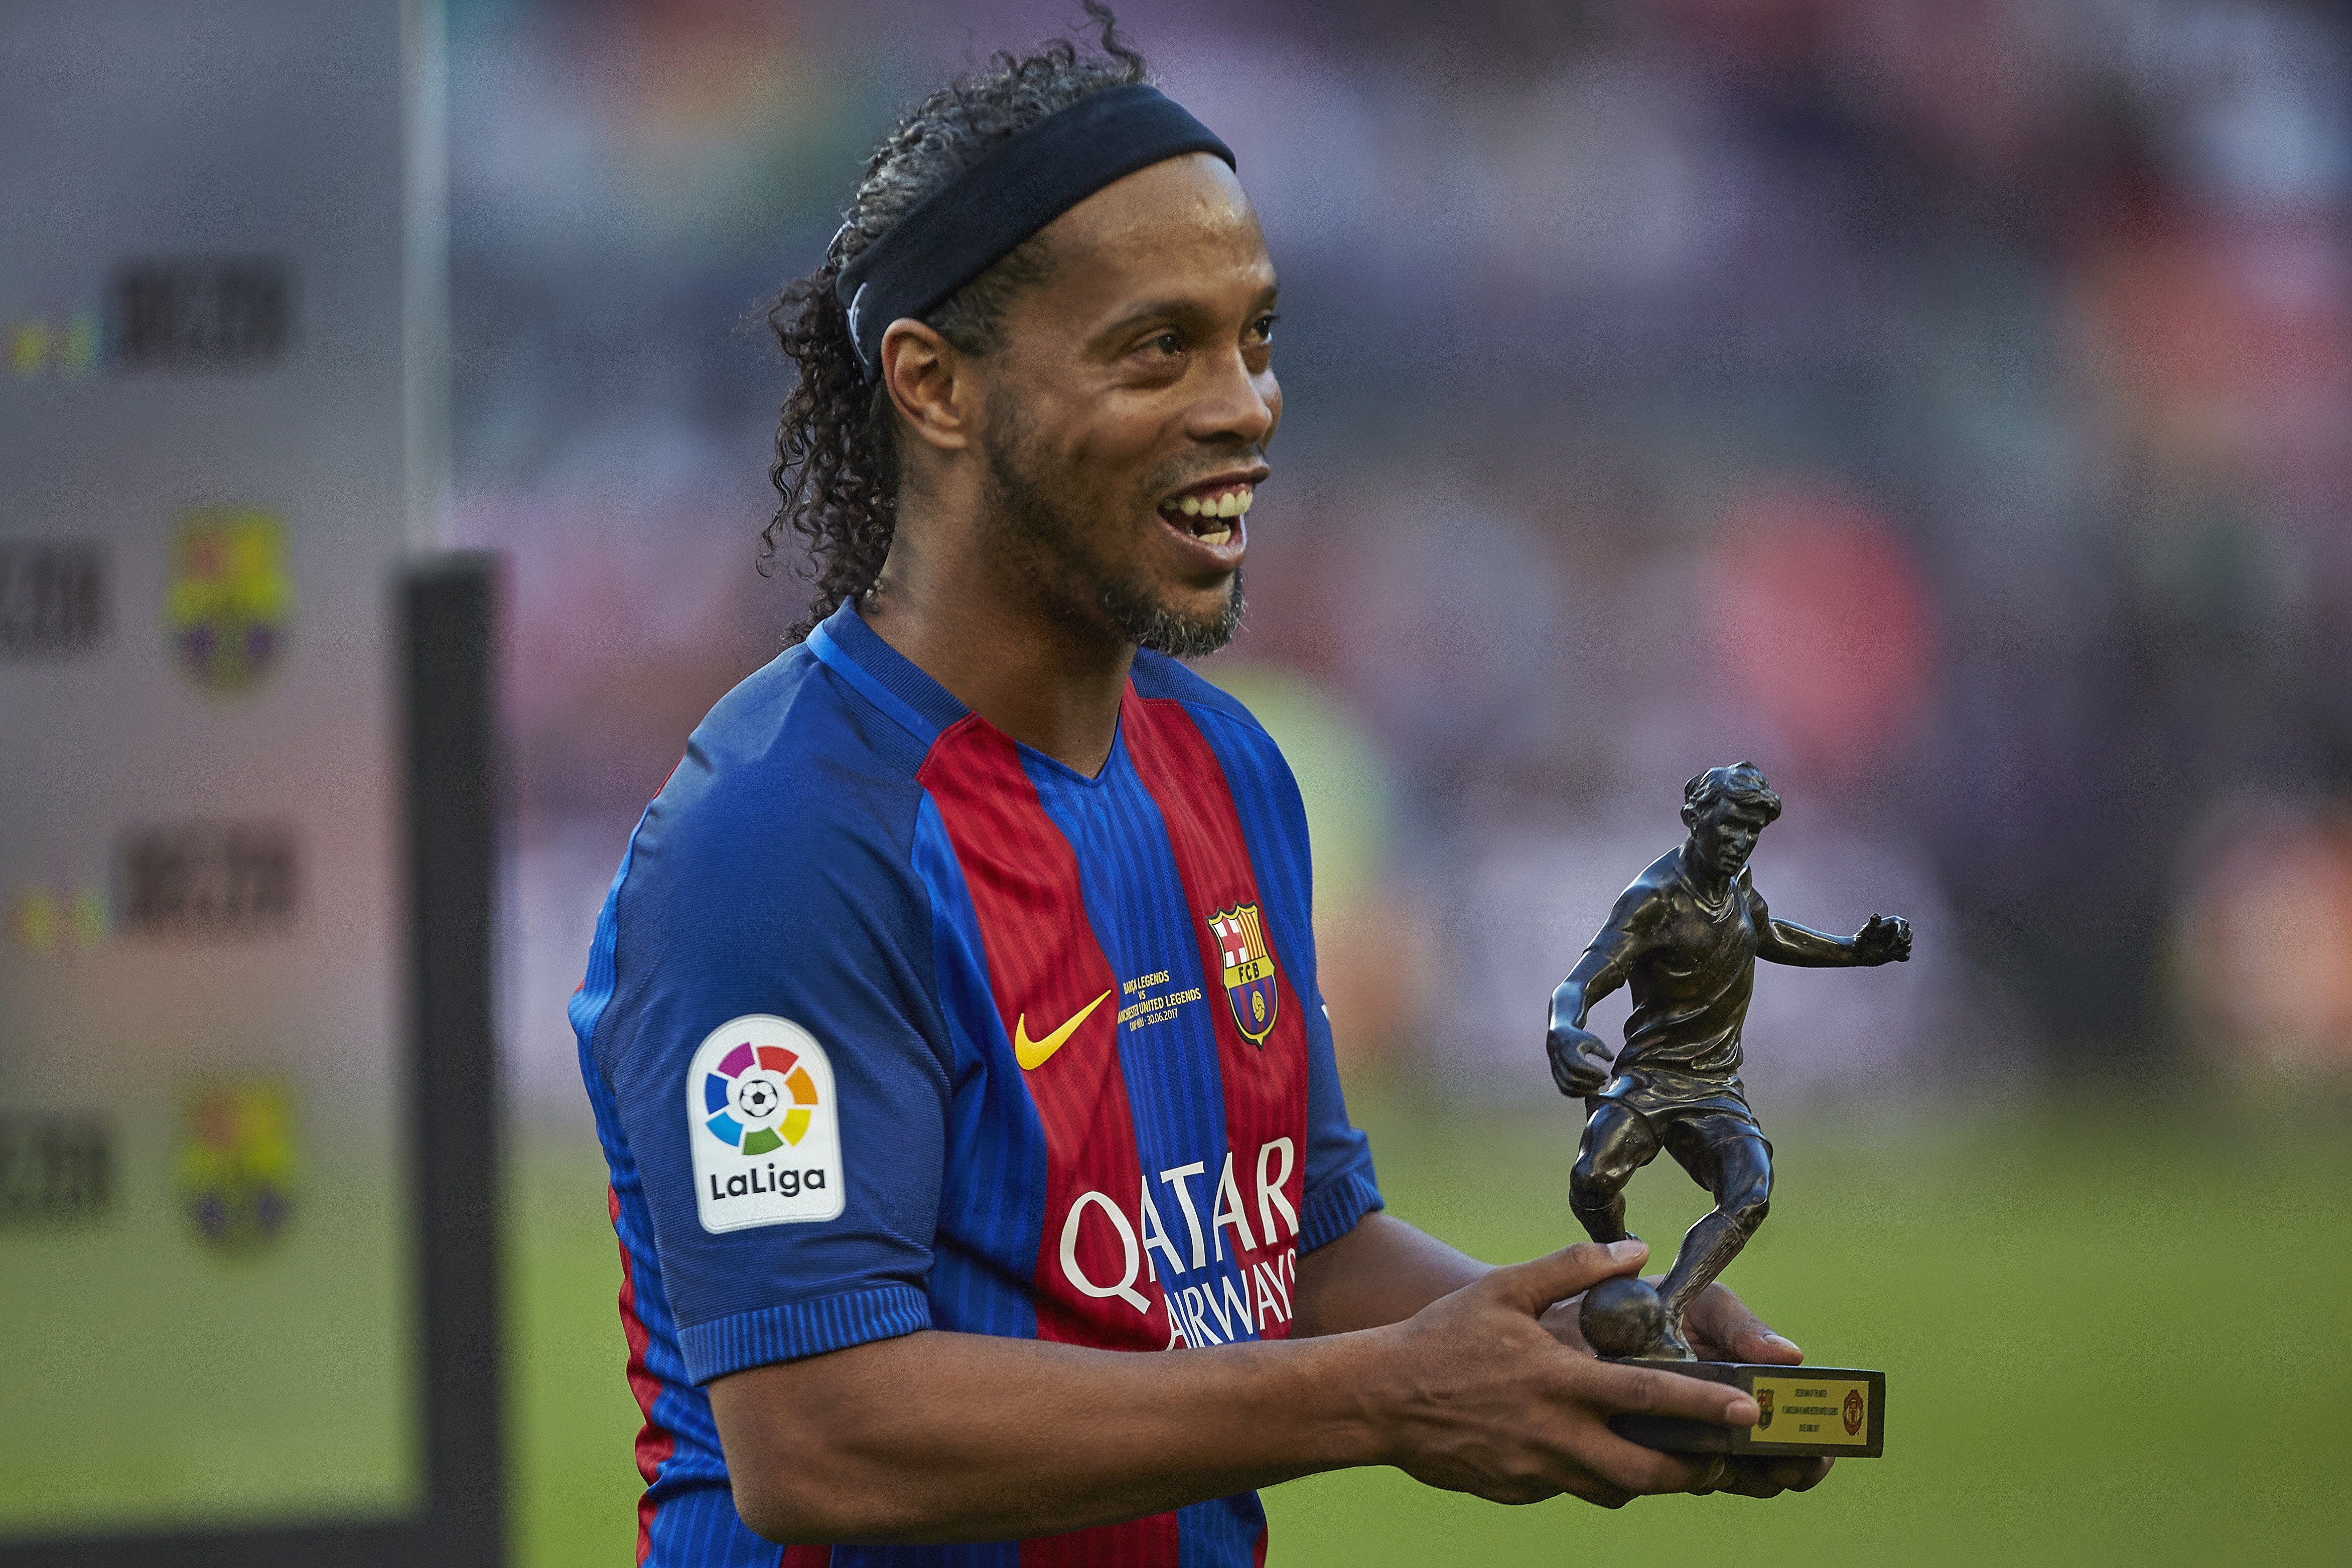 El retorno de Ronaldinho ilumina el Camp Nou